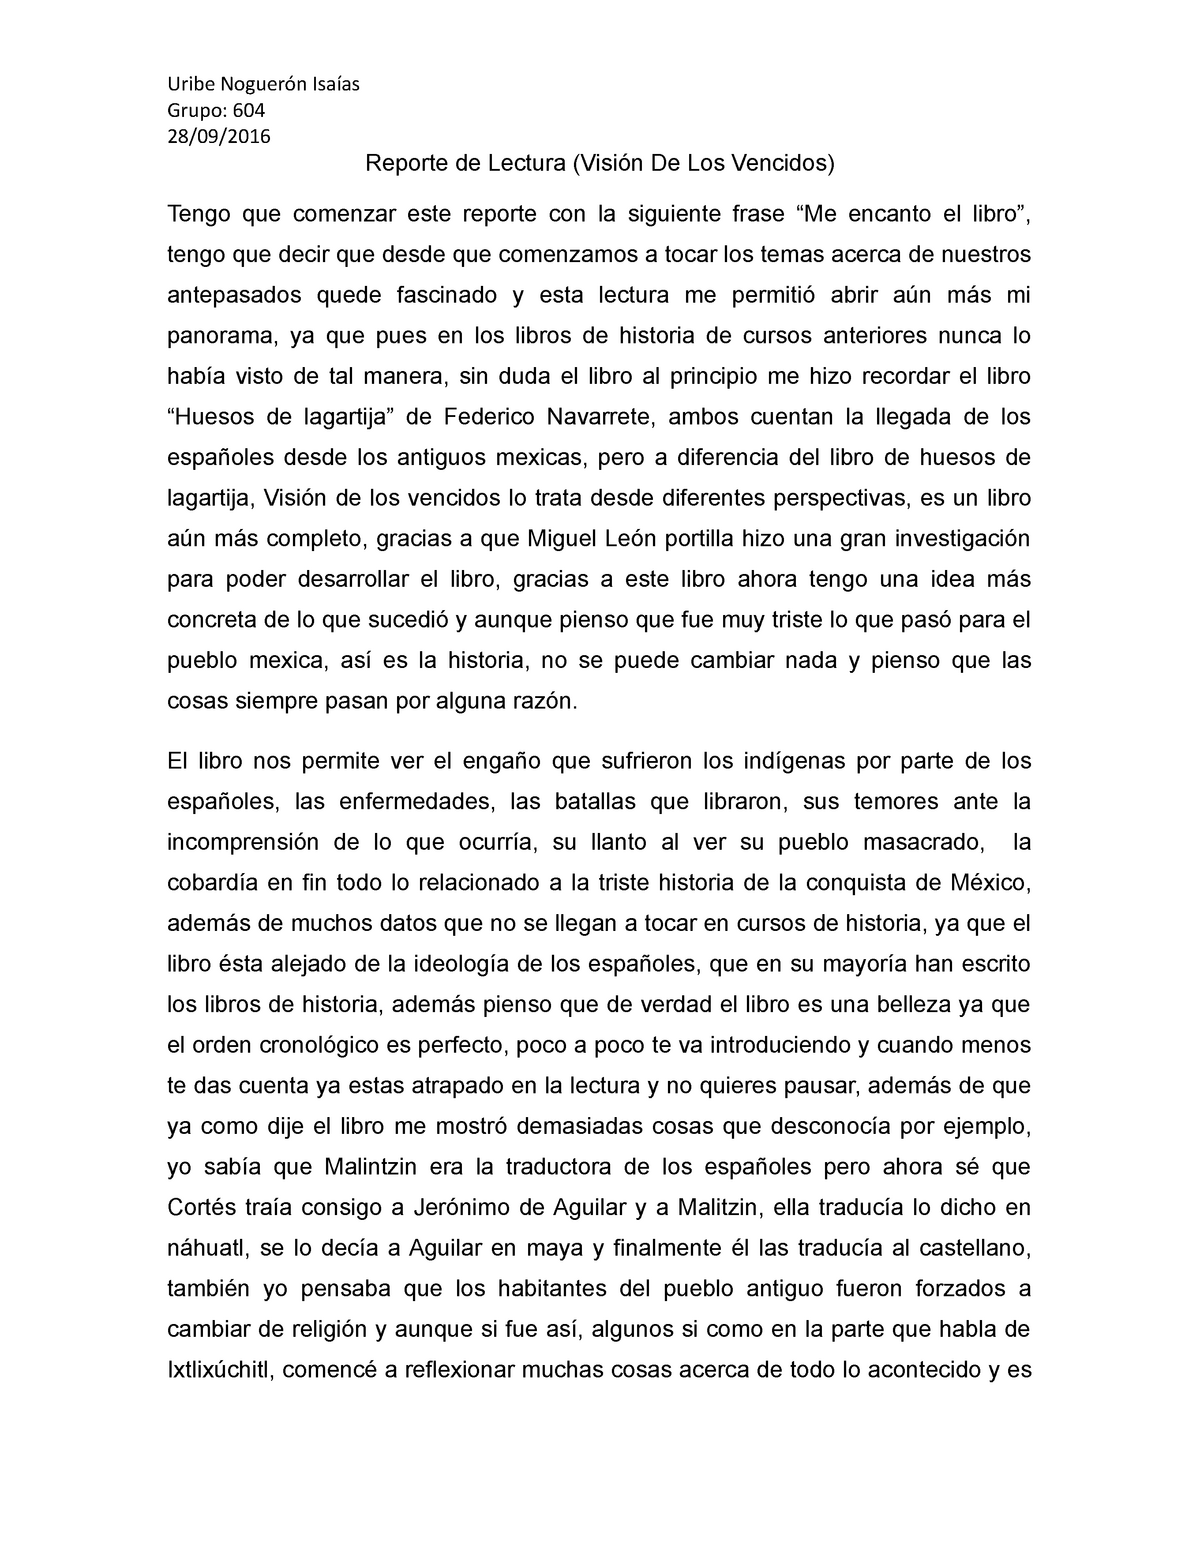 Reporte de Lectura. Visión de los vencidos 1516 UNAM